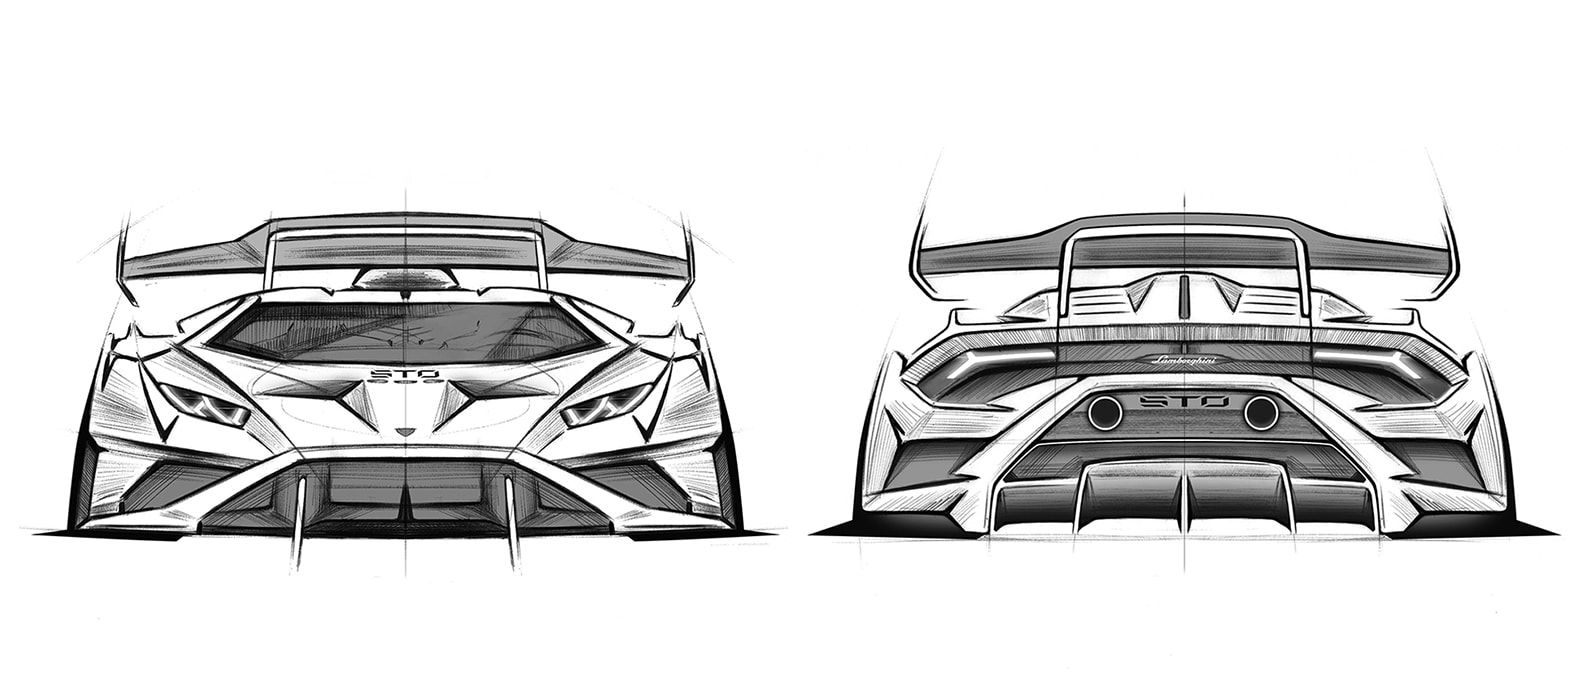 2007 Lamborghini Reventon Coupe drawings - download vector blueprints -  Outlines